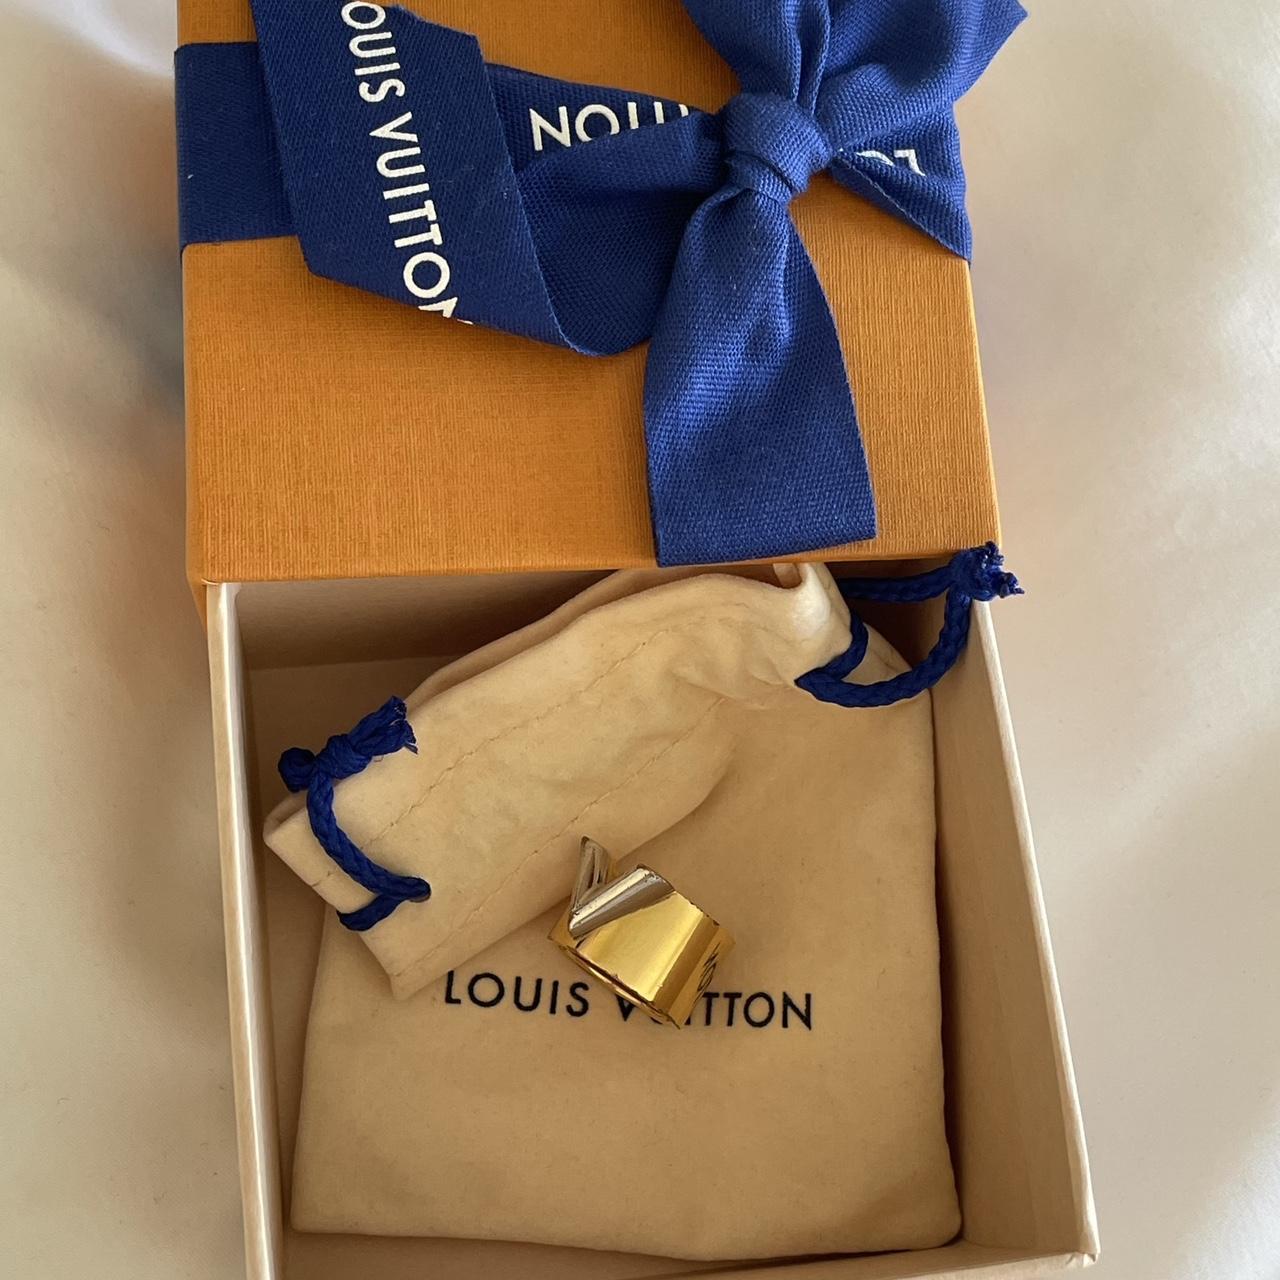 Louis Vuitton Party Favor 